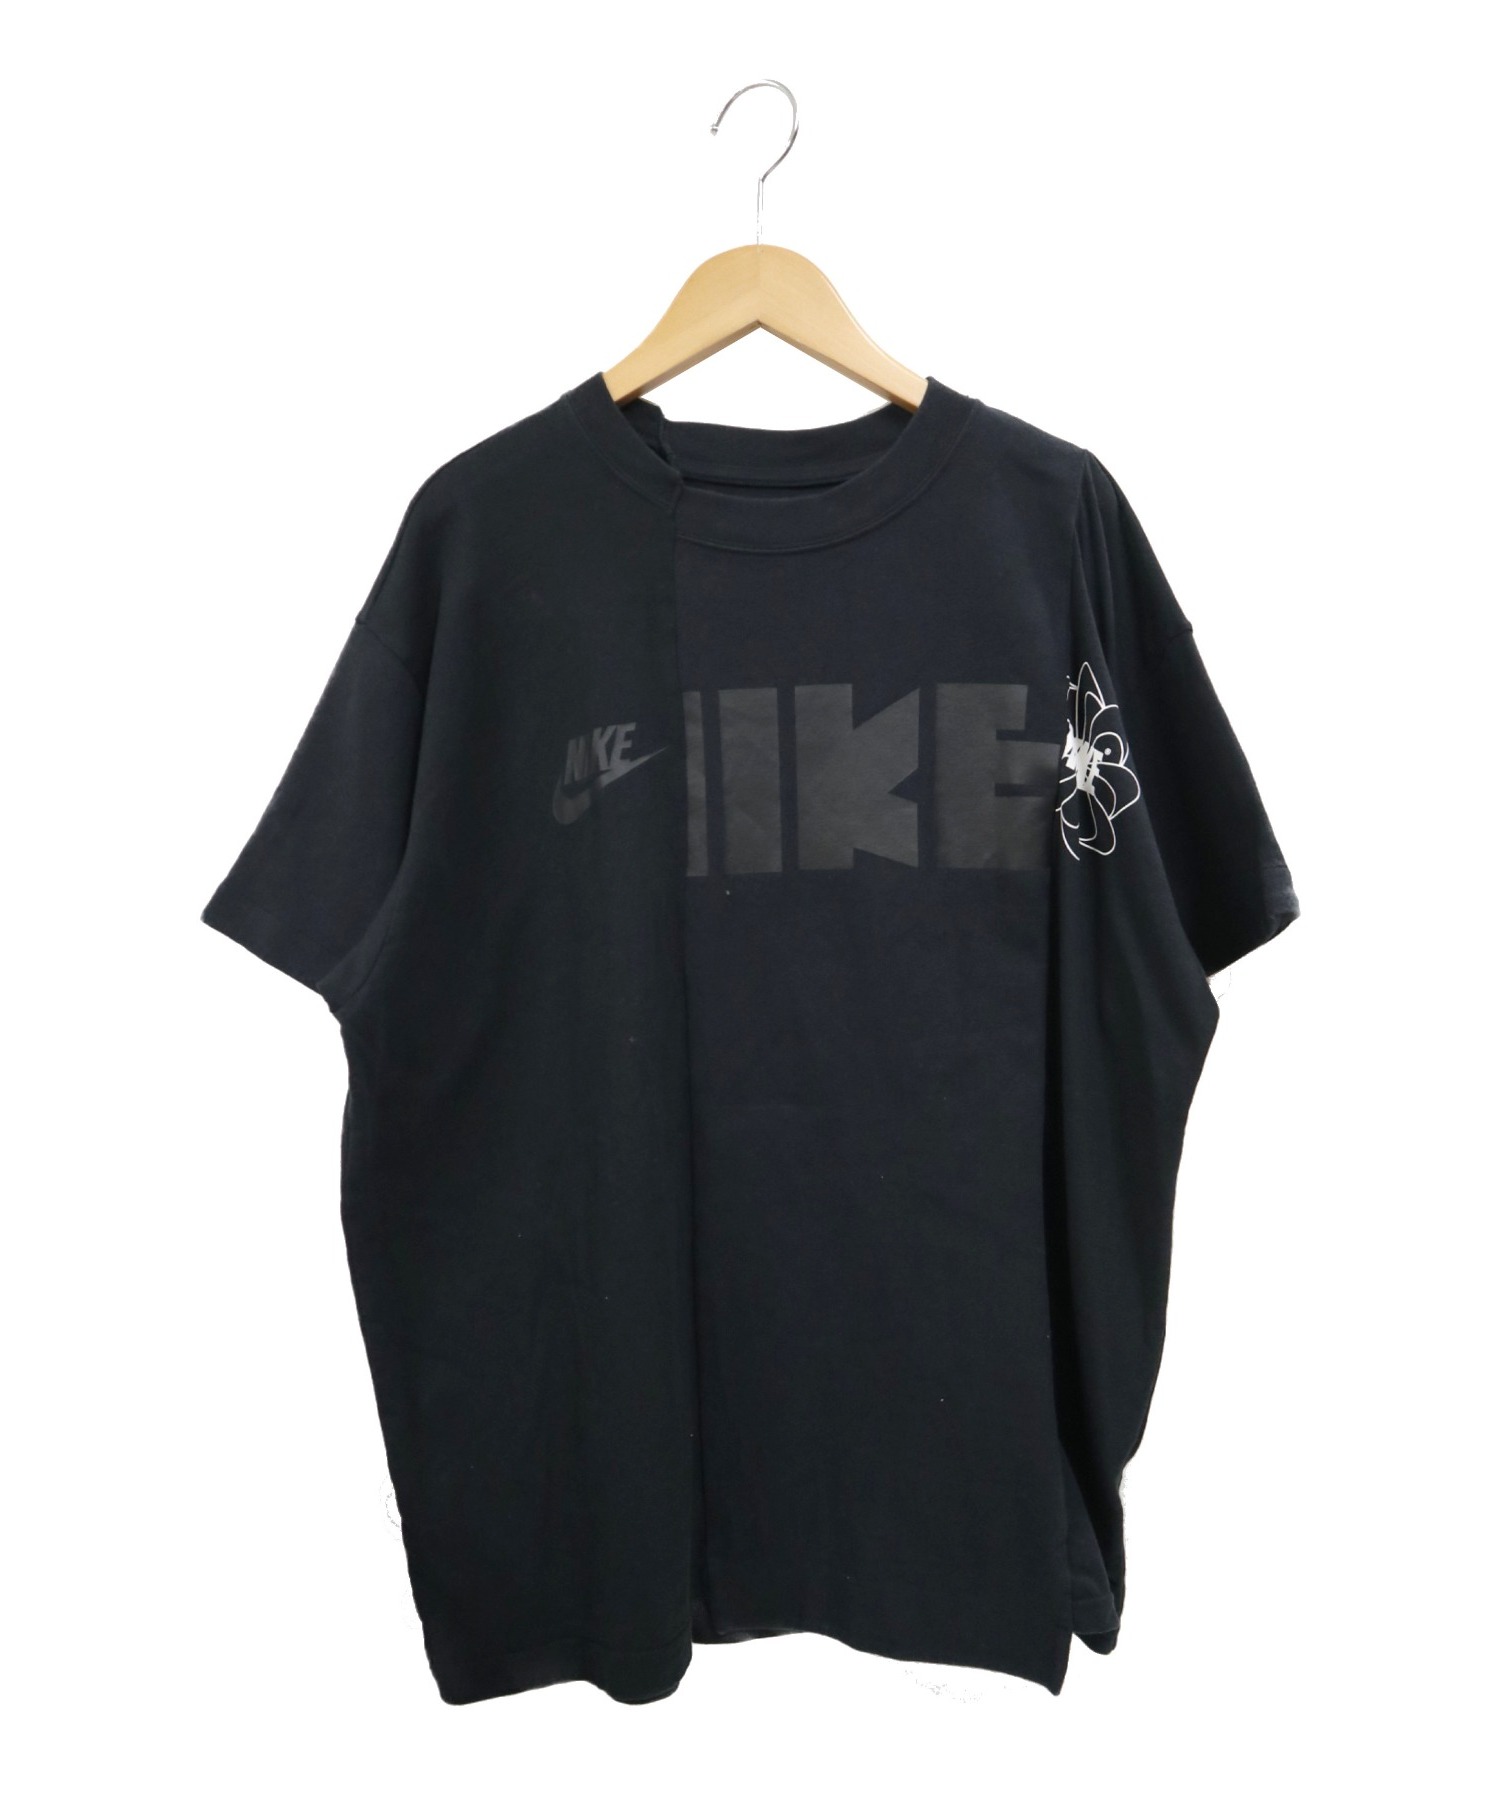 NIKE×sacai (ナイキ×サカイ) コラボ再構築ハイブリッドプリントTシャツ ブラック サイズ:L CD6311-010 NikeLab W  Nrg Ga